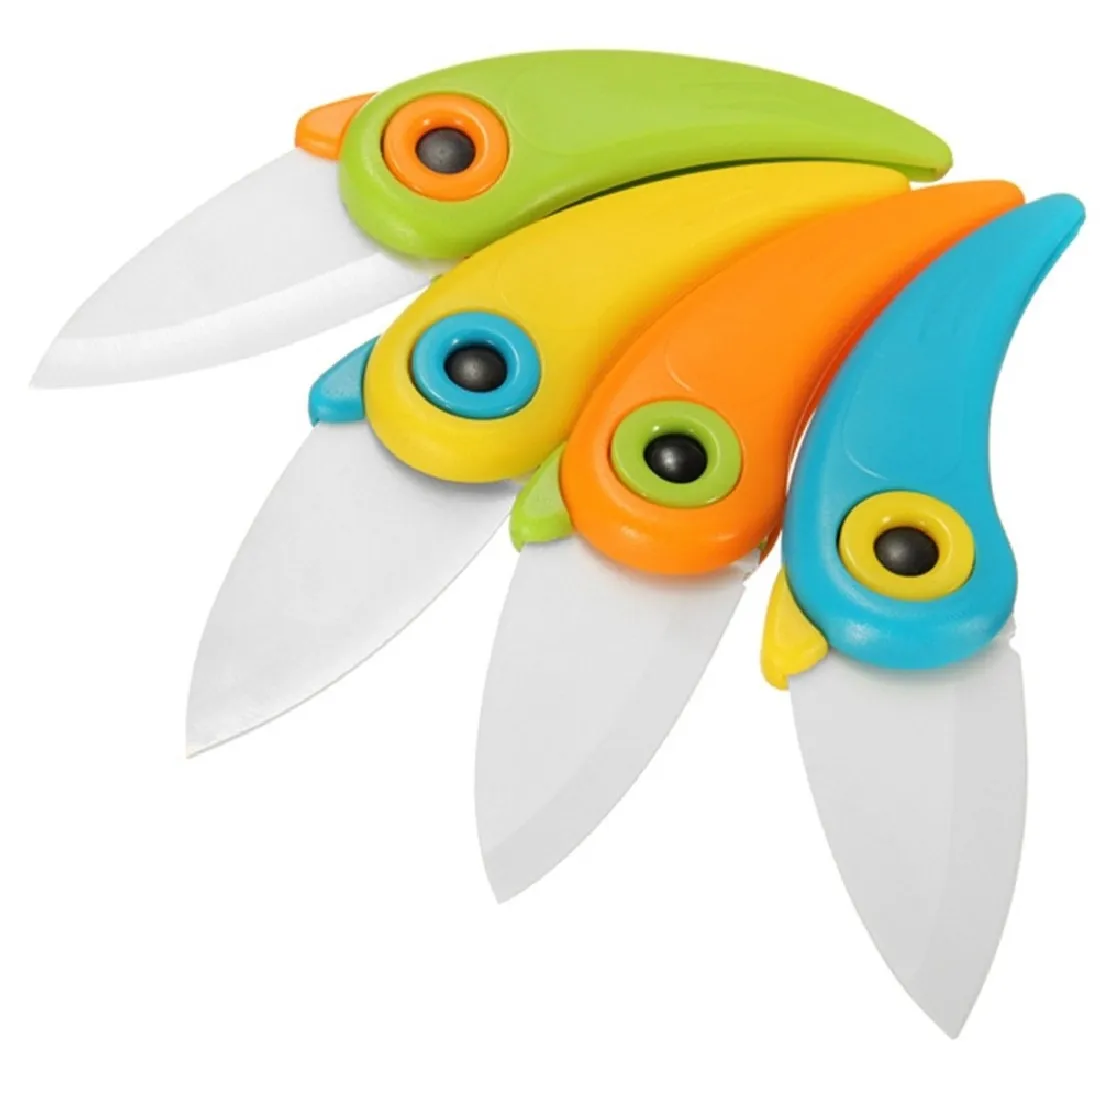 Высококачественный птичий керамический нож, Подарочный нож, карманные керамические складные ножи, кухонный нож для очистки фруктов с красочной ручкой ABS